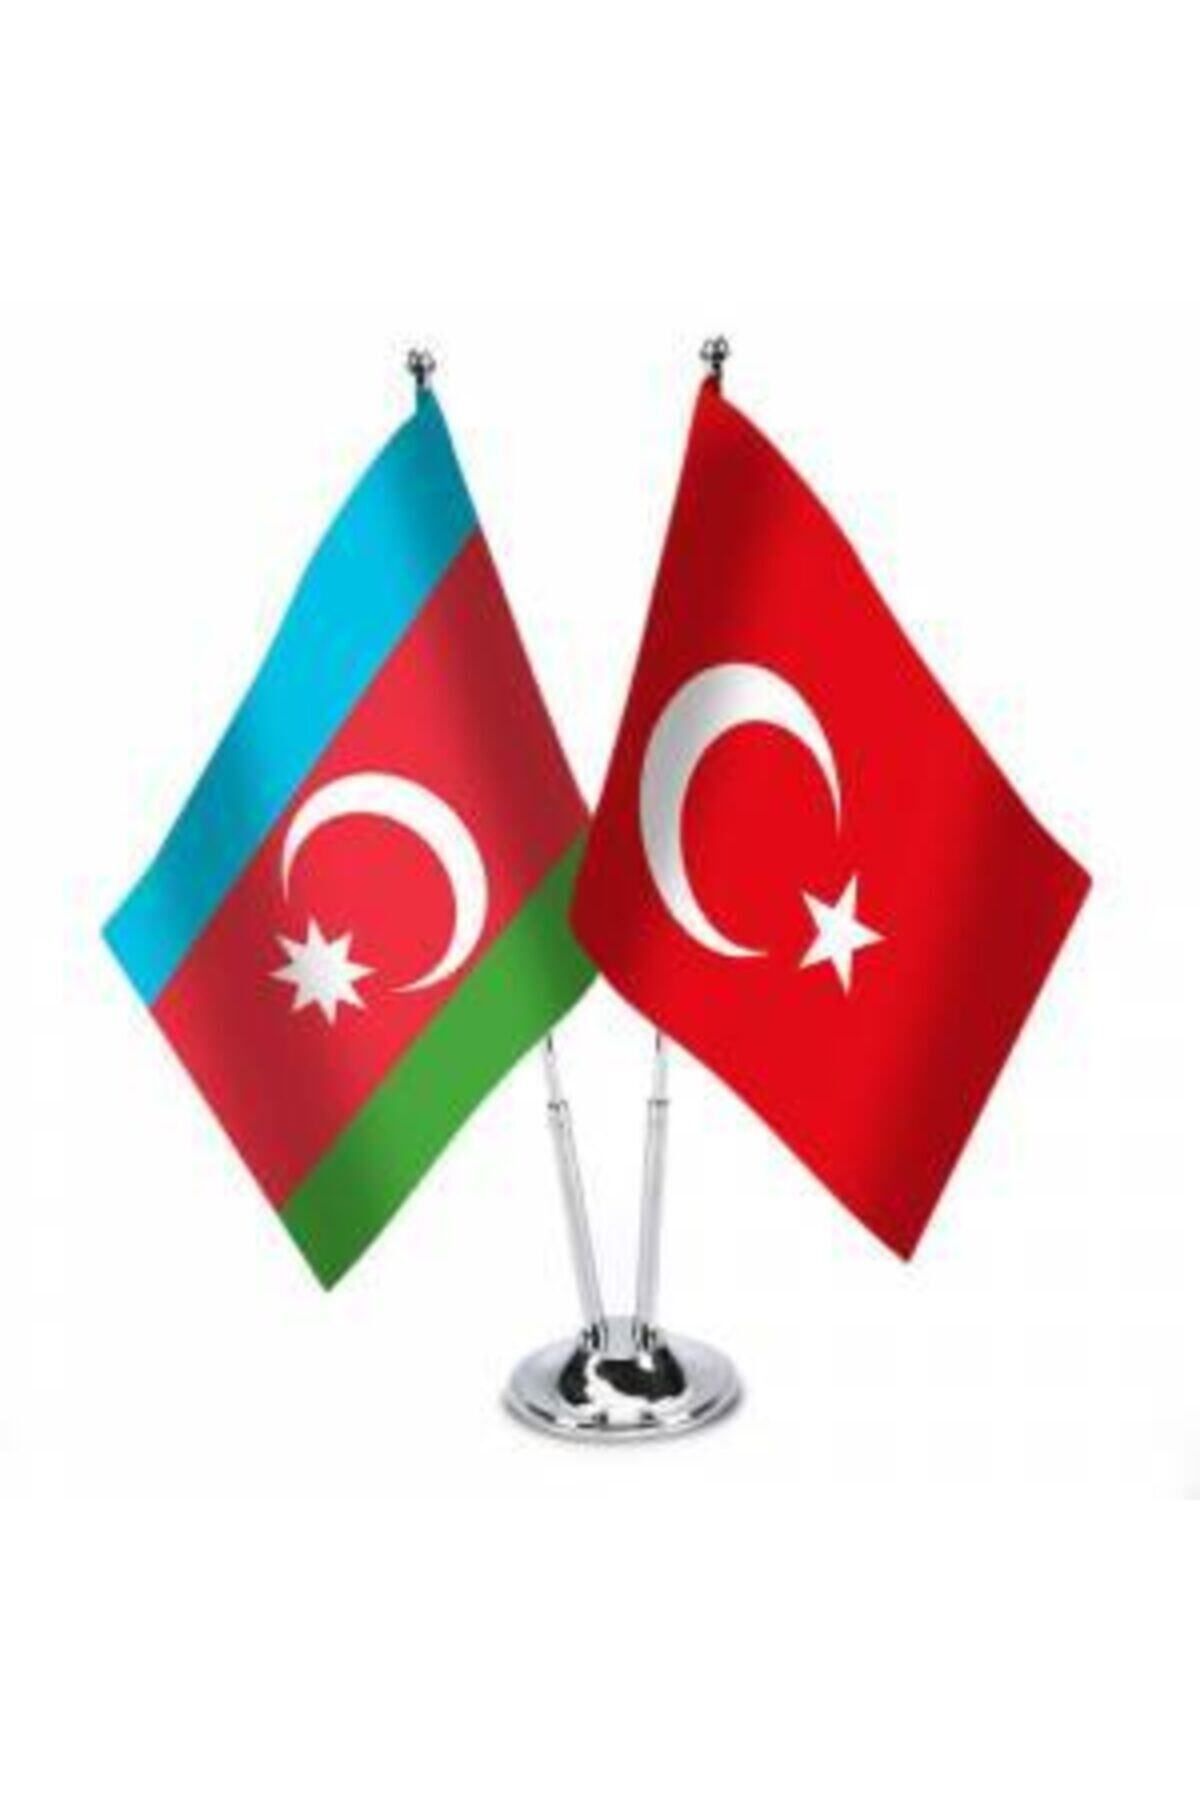 Vatan Bayrak Masa Üstü Azerbaycan Türkiye Bayrağı + Ikli Krom Direk Masa Bayrağı Seti